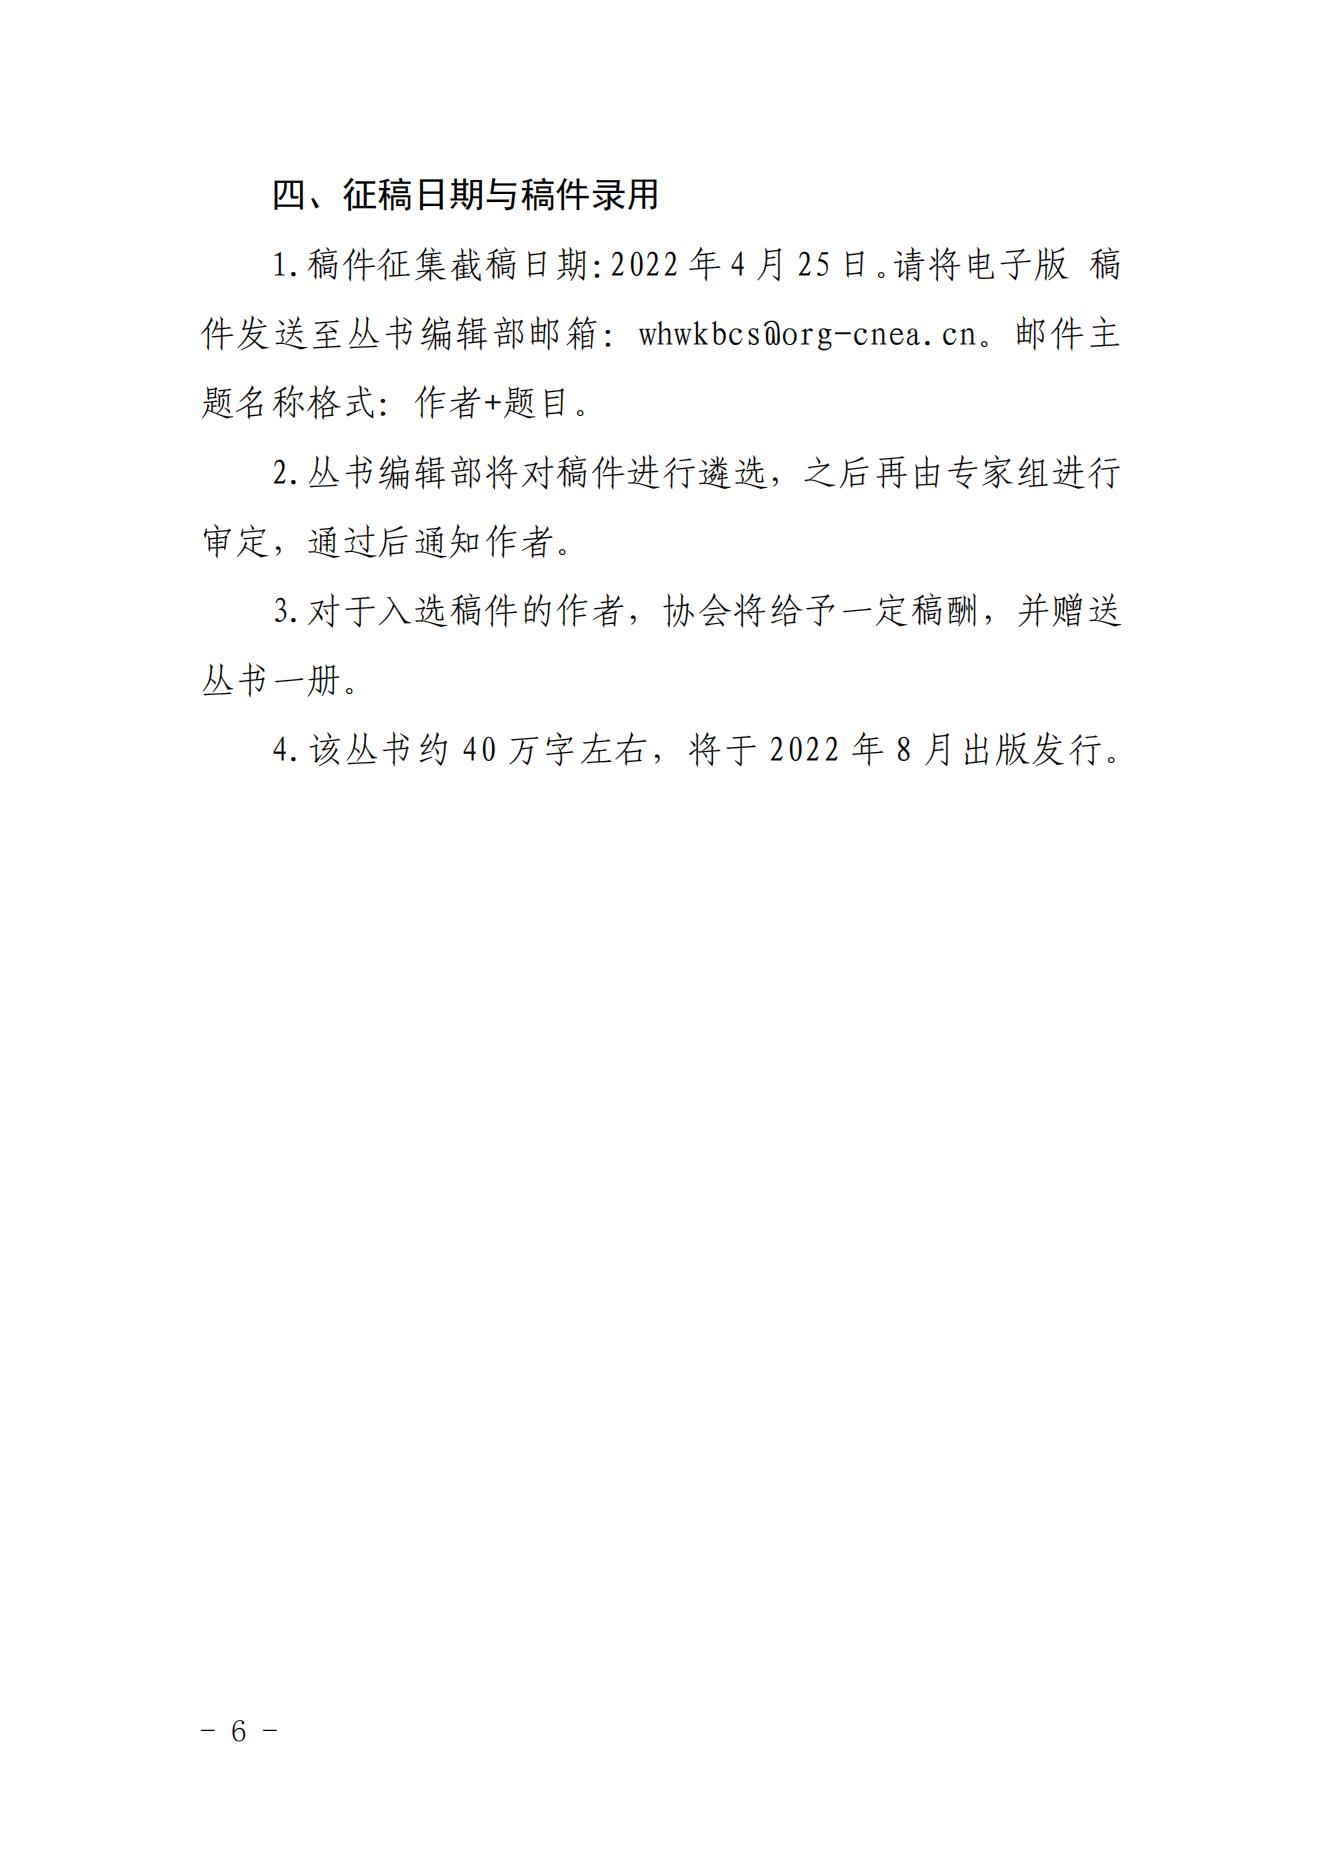 关于《中国核能行业智库丛书》（第五卷）征稿的函_05.jpg